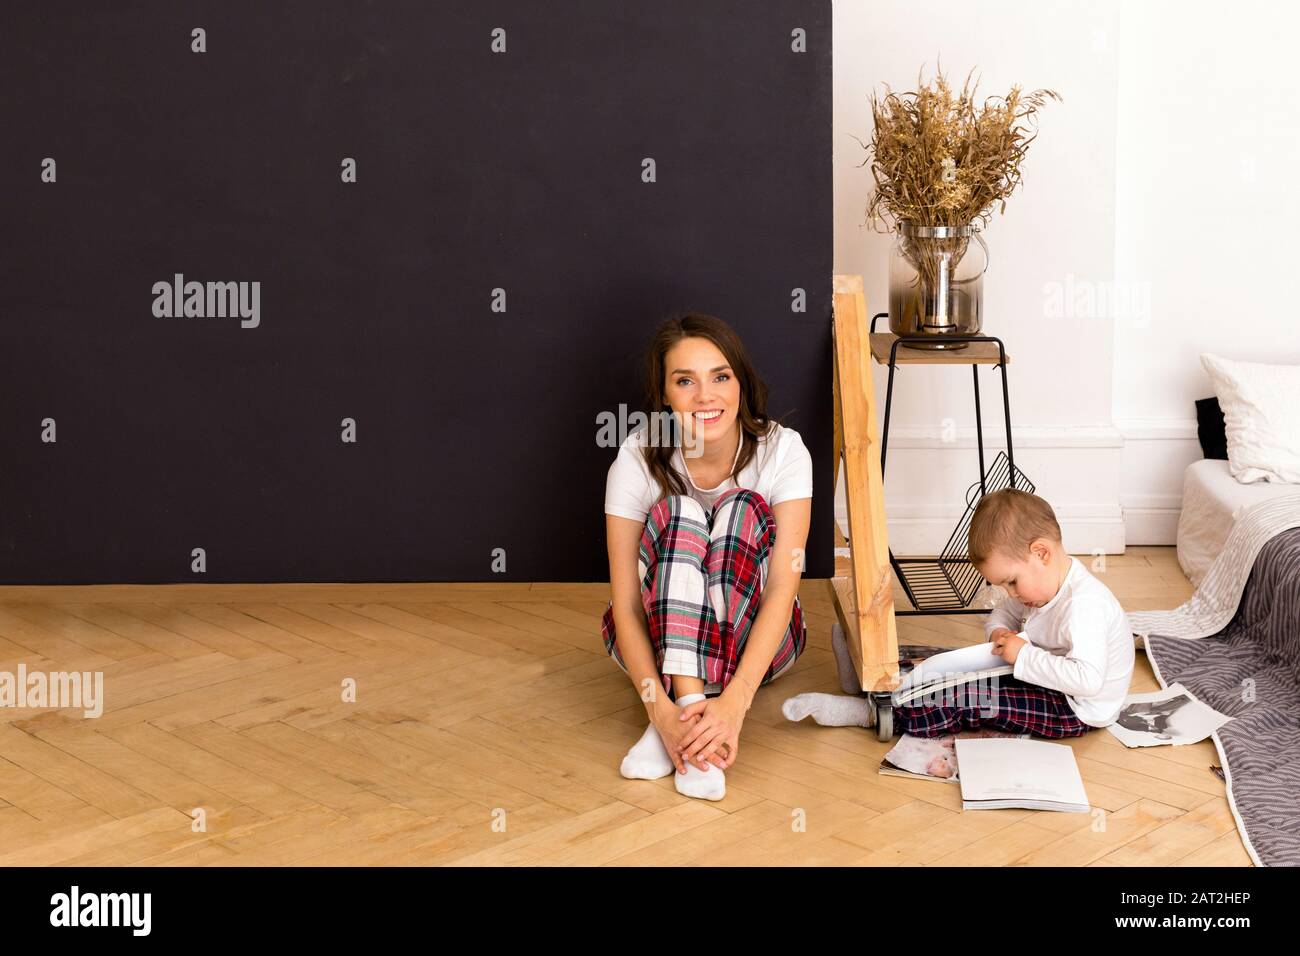 Son dessin sur papier assis sur le sol avec une mère heureuse Banque D'Images